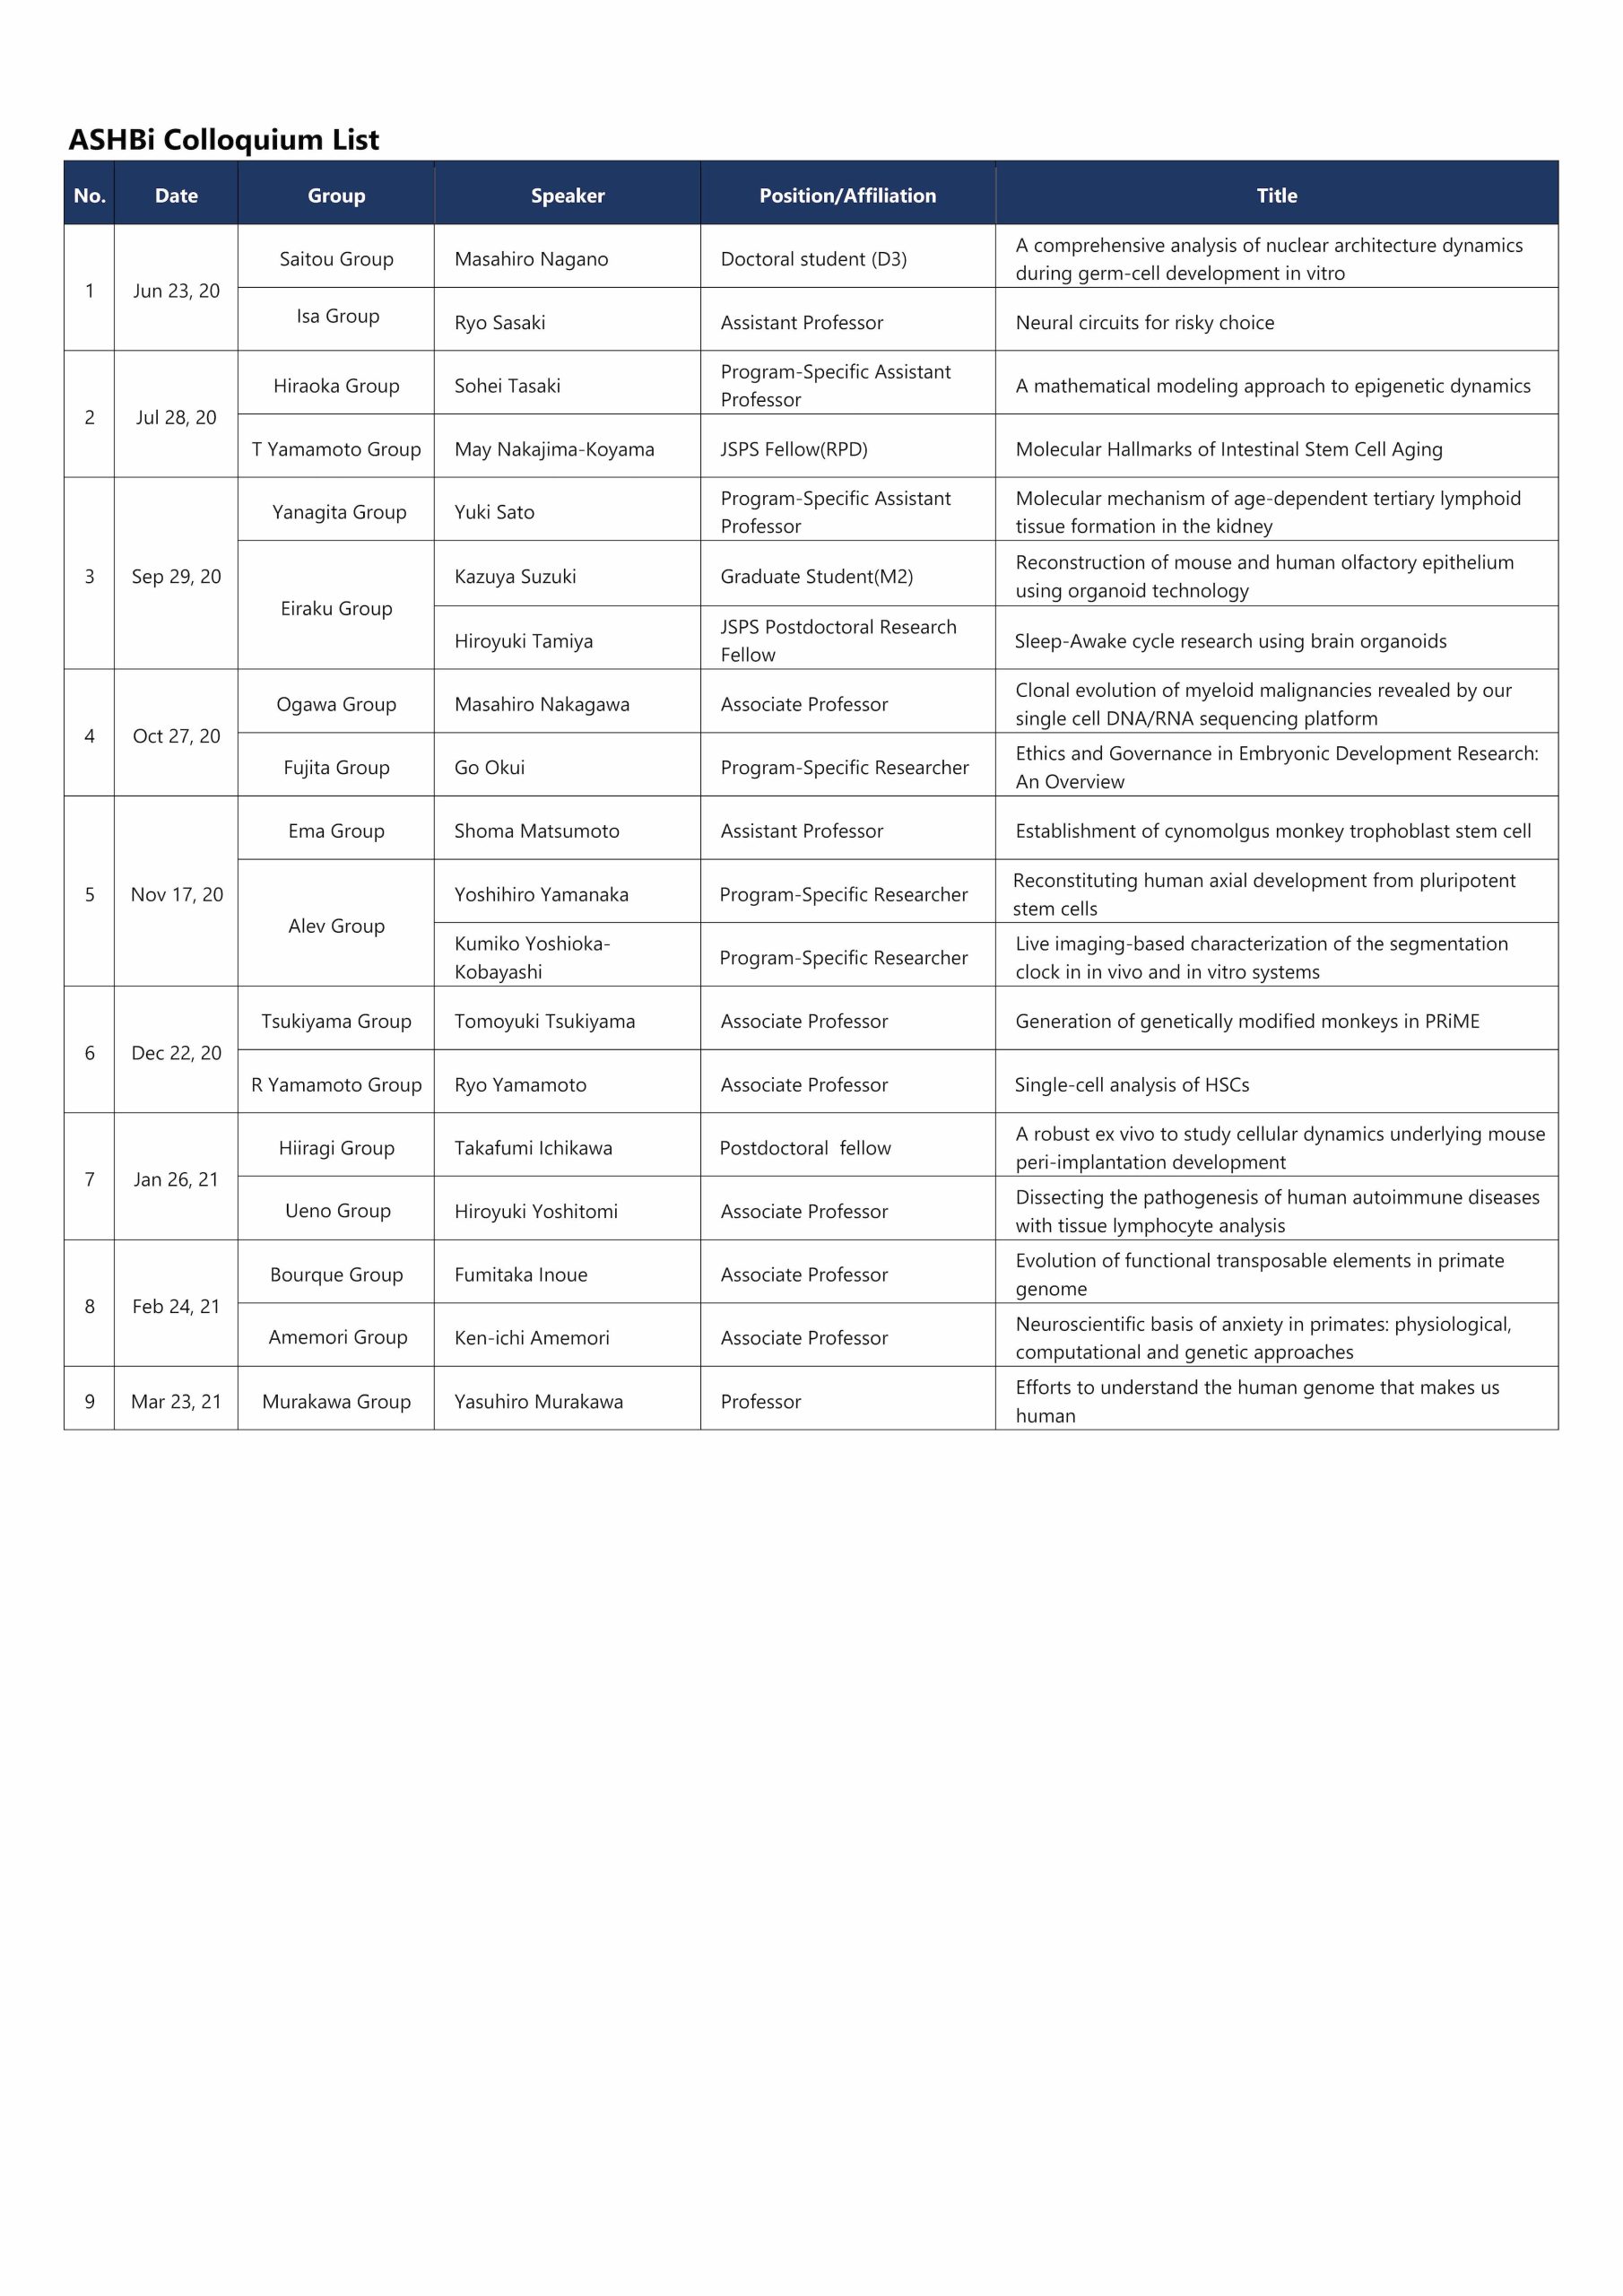 Colloquium List (Apr2020-Mar2021) 